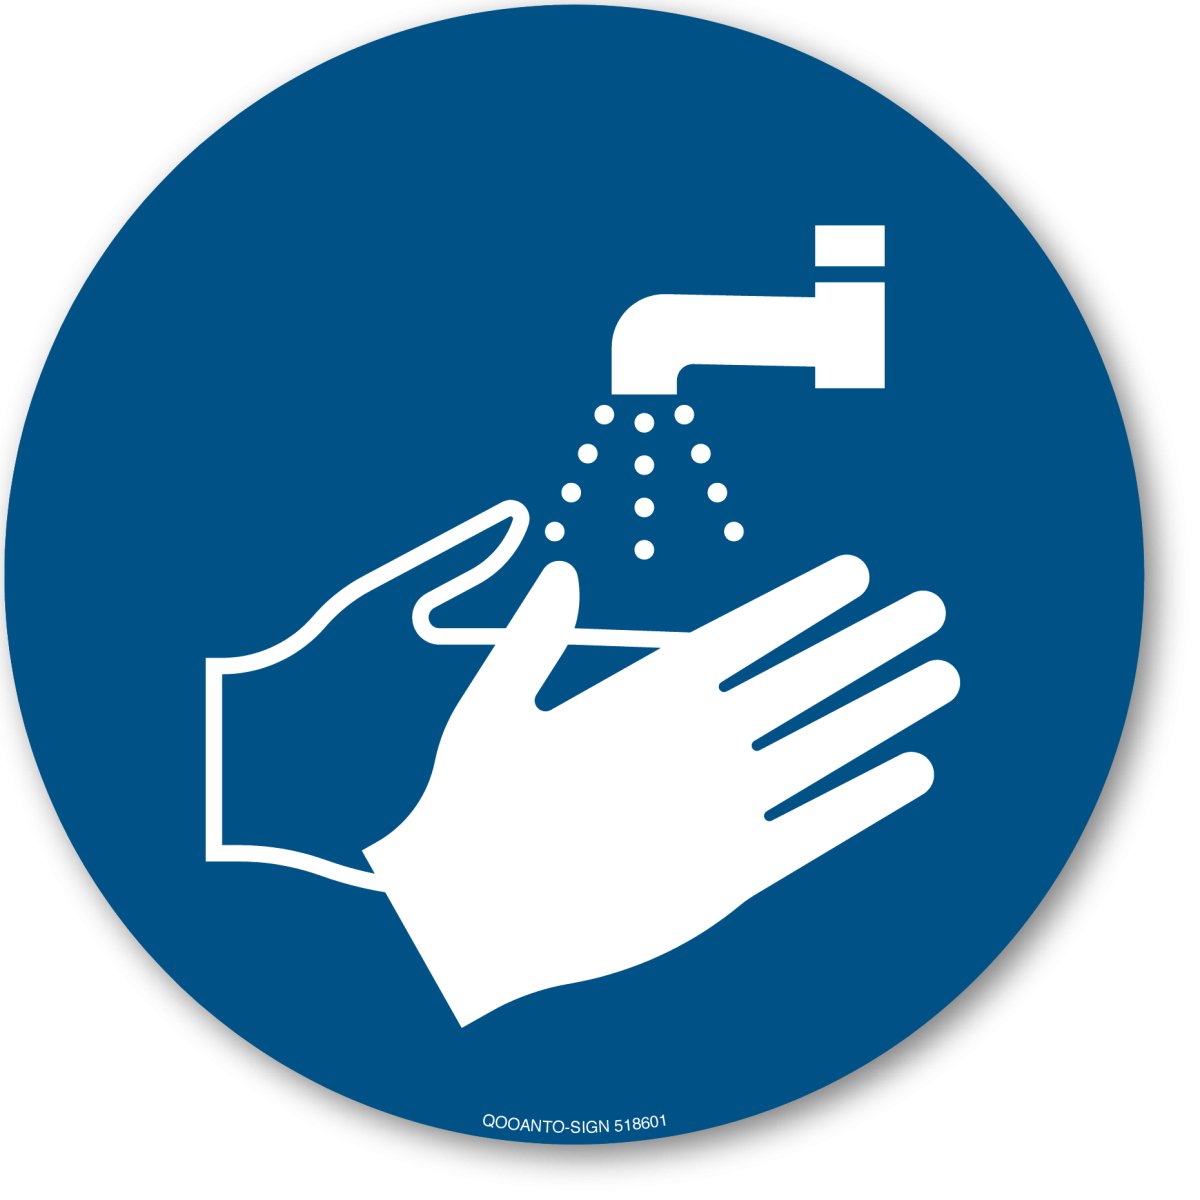 Hände Waschen, EN ISO 7010, M011 Gebotsschild oder Aufkleber aus Alu-Verbund oder Selbstklebefolie mit UV-Schutz - QOOANTO-SIGN